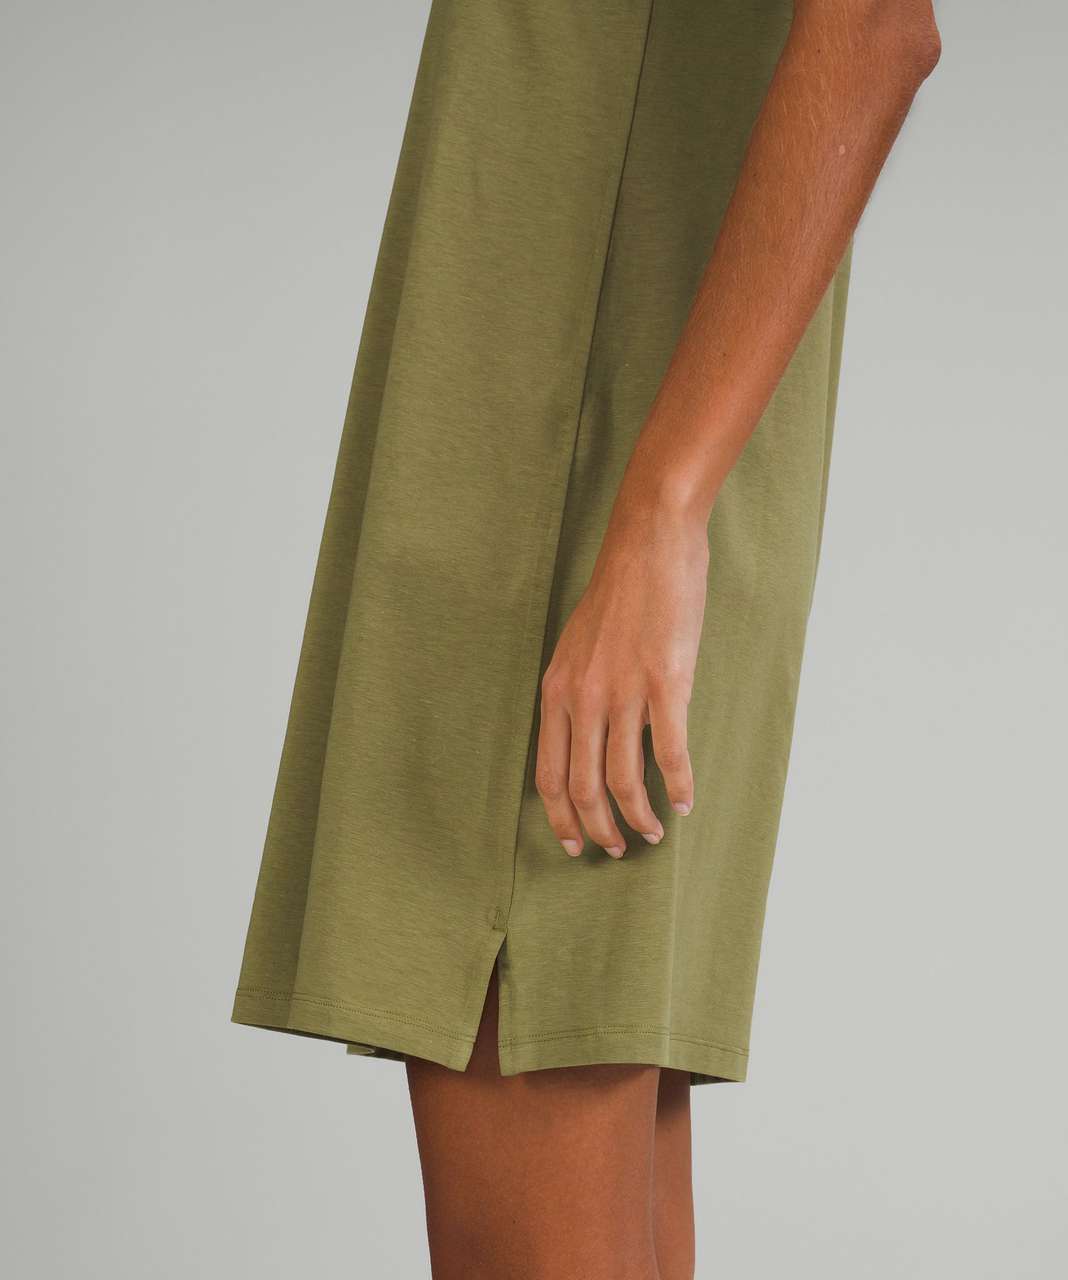 Lululemon Classic-Fit Cotton-Blend Dress - Bronze Green